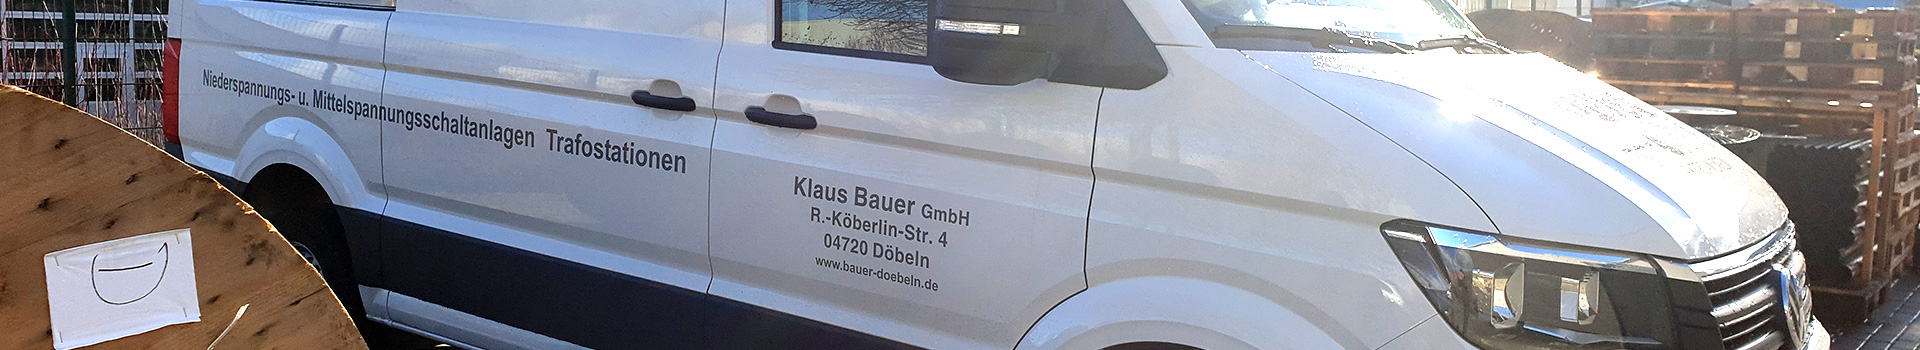 Unternehmen - Bauer Elektro Döbeln